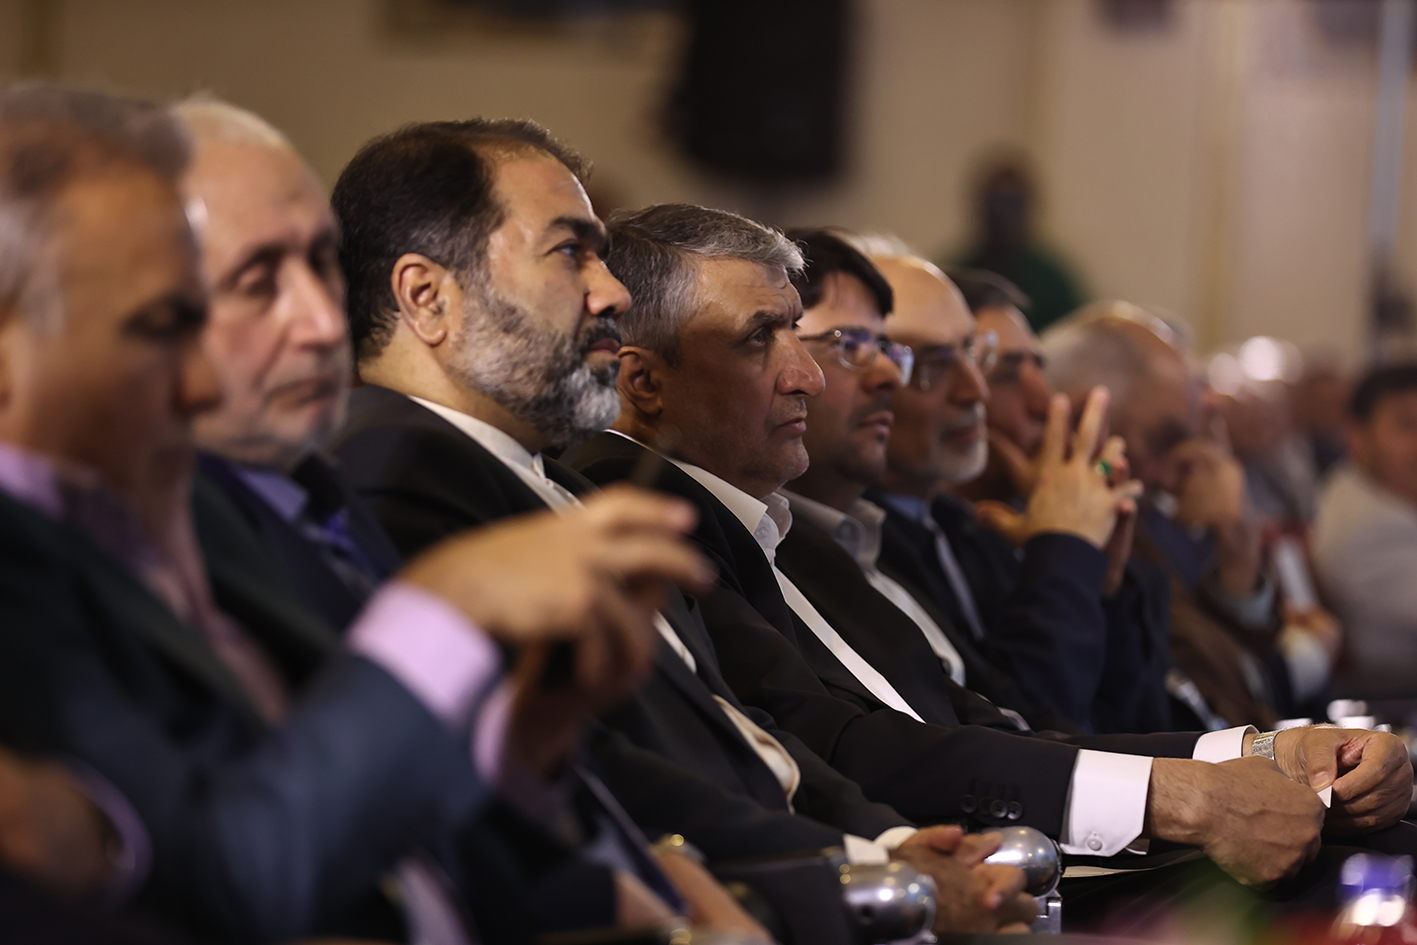 چاره ای جز سرمایه گذاری در صنعت هسته ای نداریم/ کنفرانس اصفهان در بهترین زمان برگزار شد